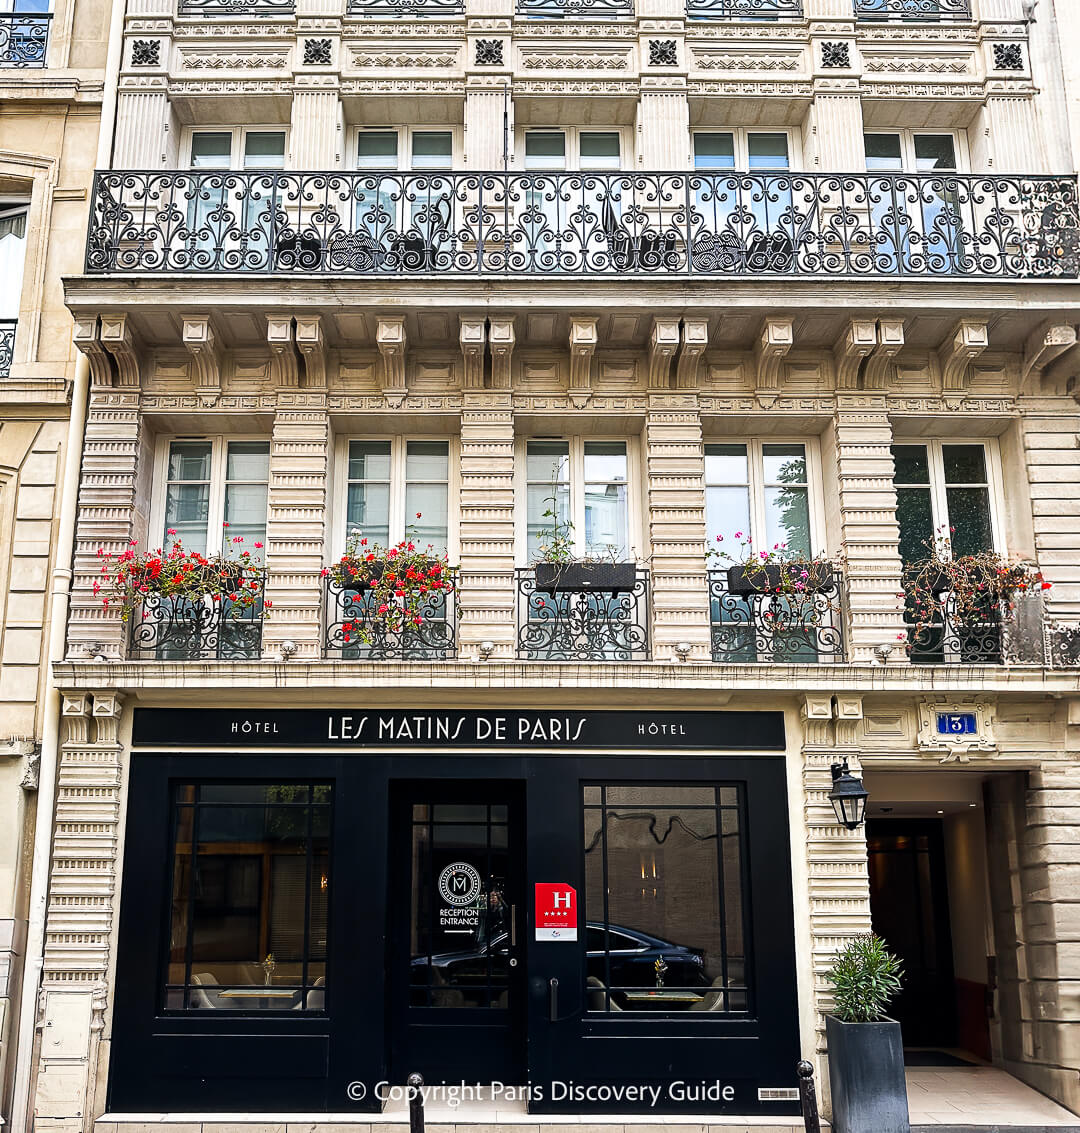 Les Matins de Paris hotel in Paris's SoPi neighborhood